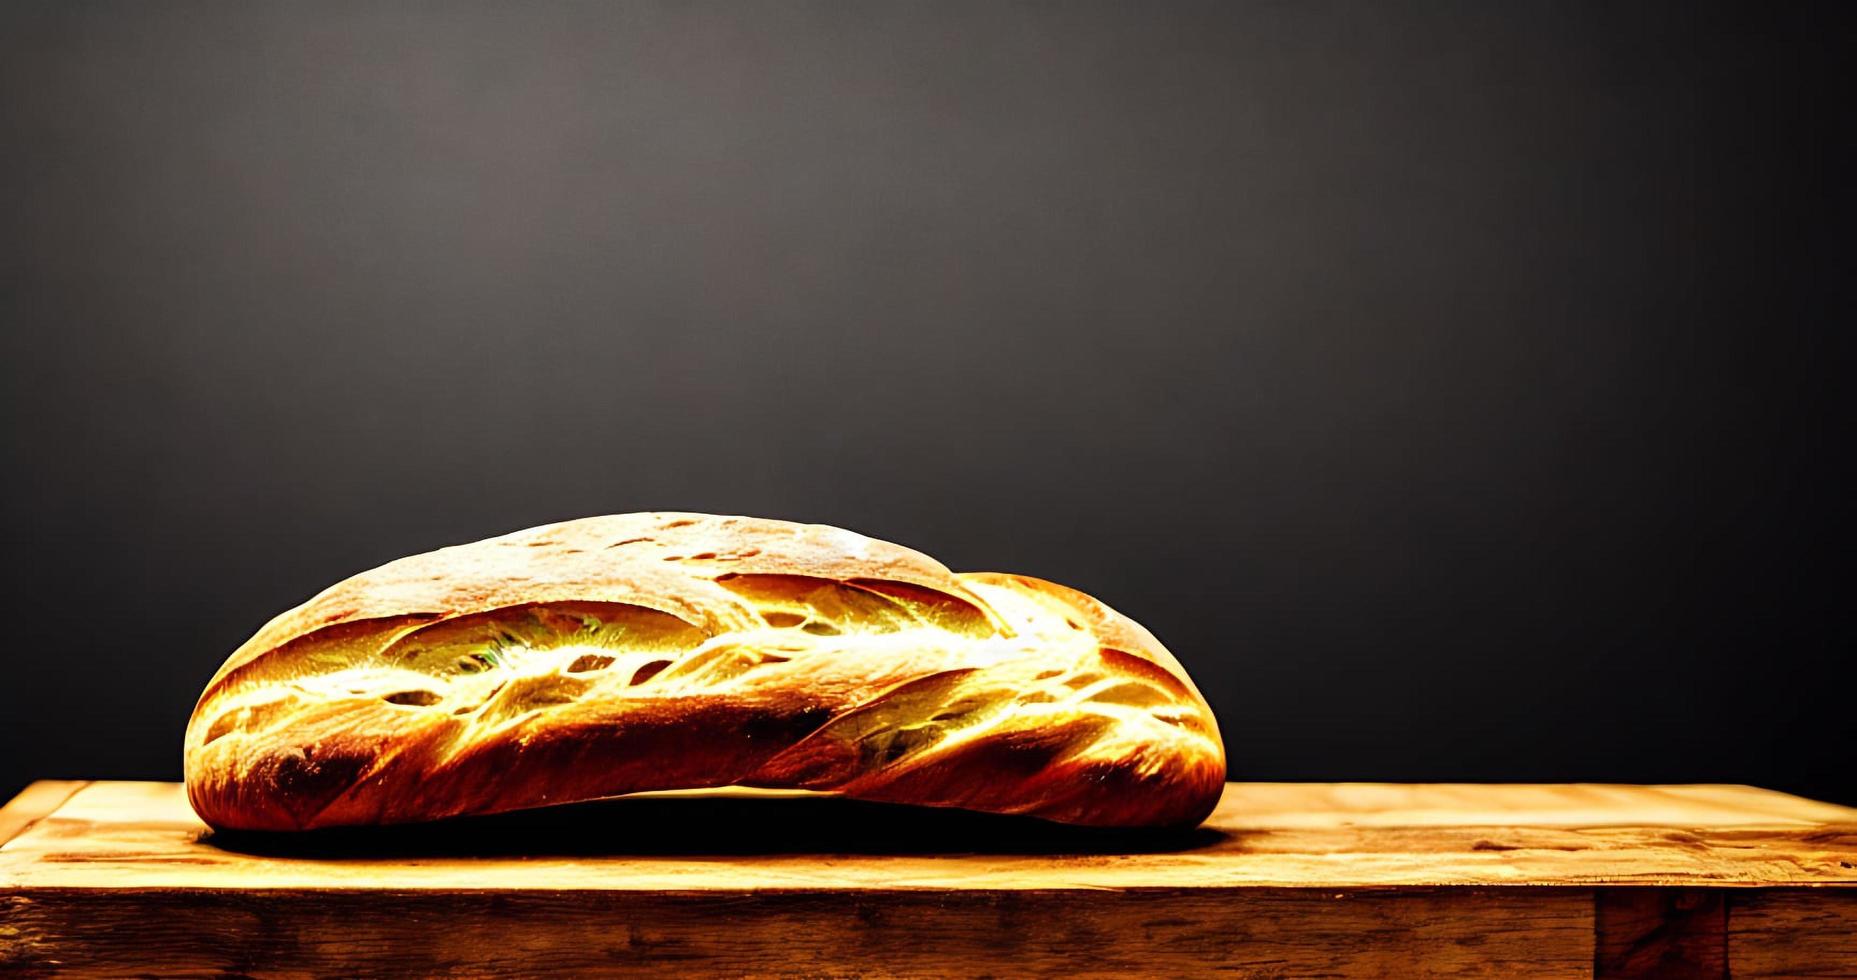 forno - tradicional pão fresco quente cozido. tiro perto do pão. foto